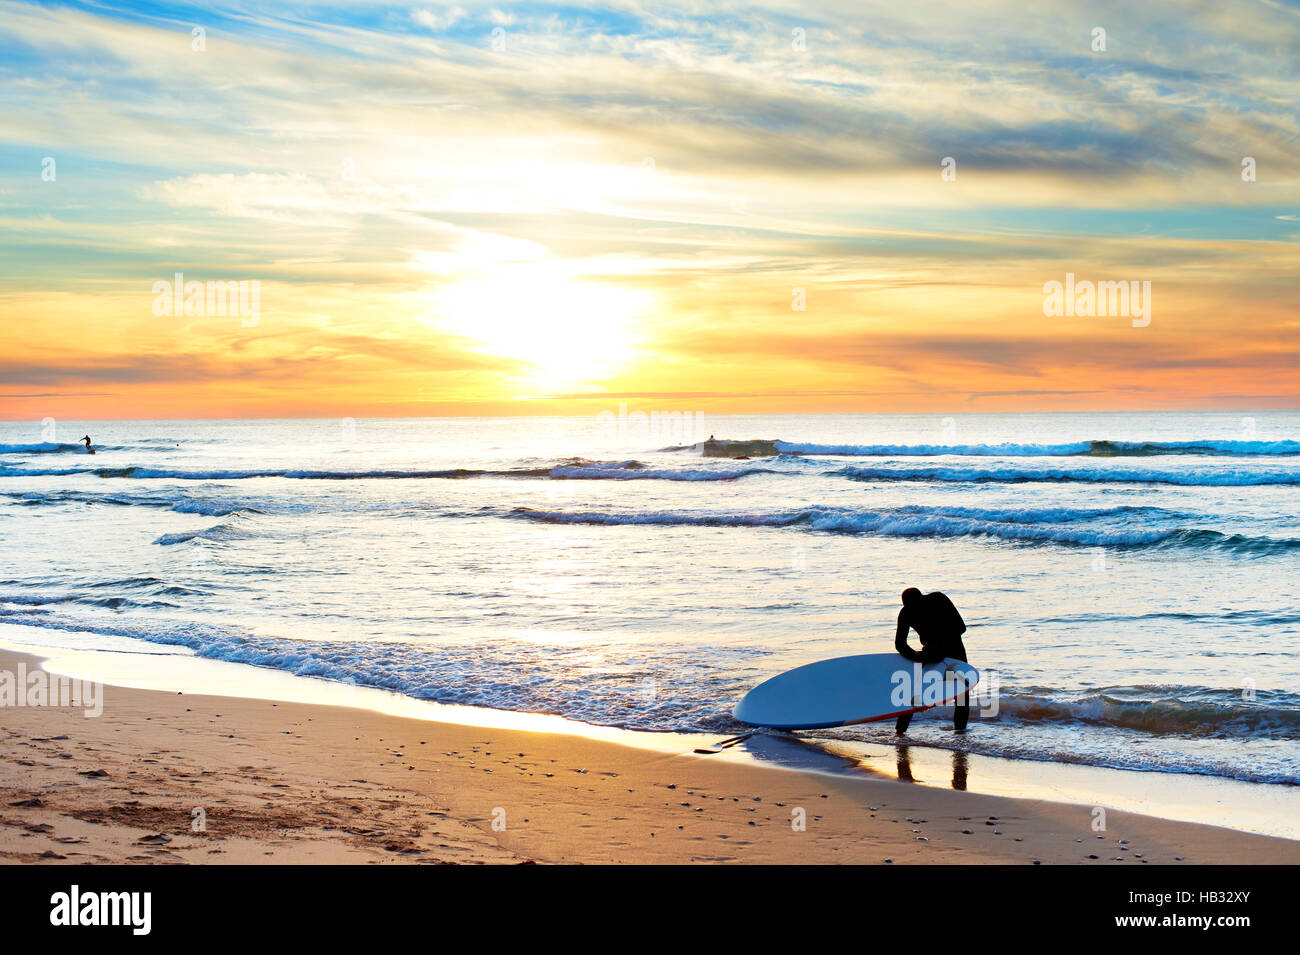 Le surf au coucher du soleil Banque D'Images